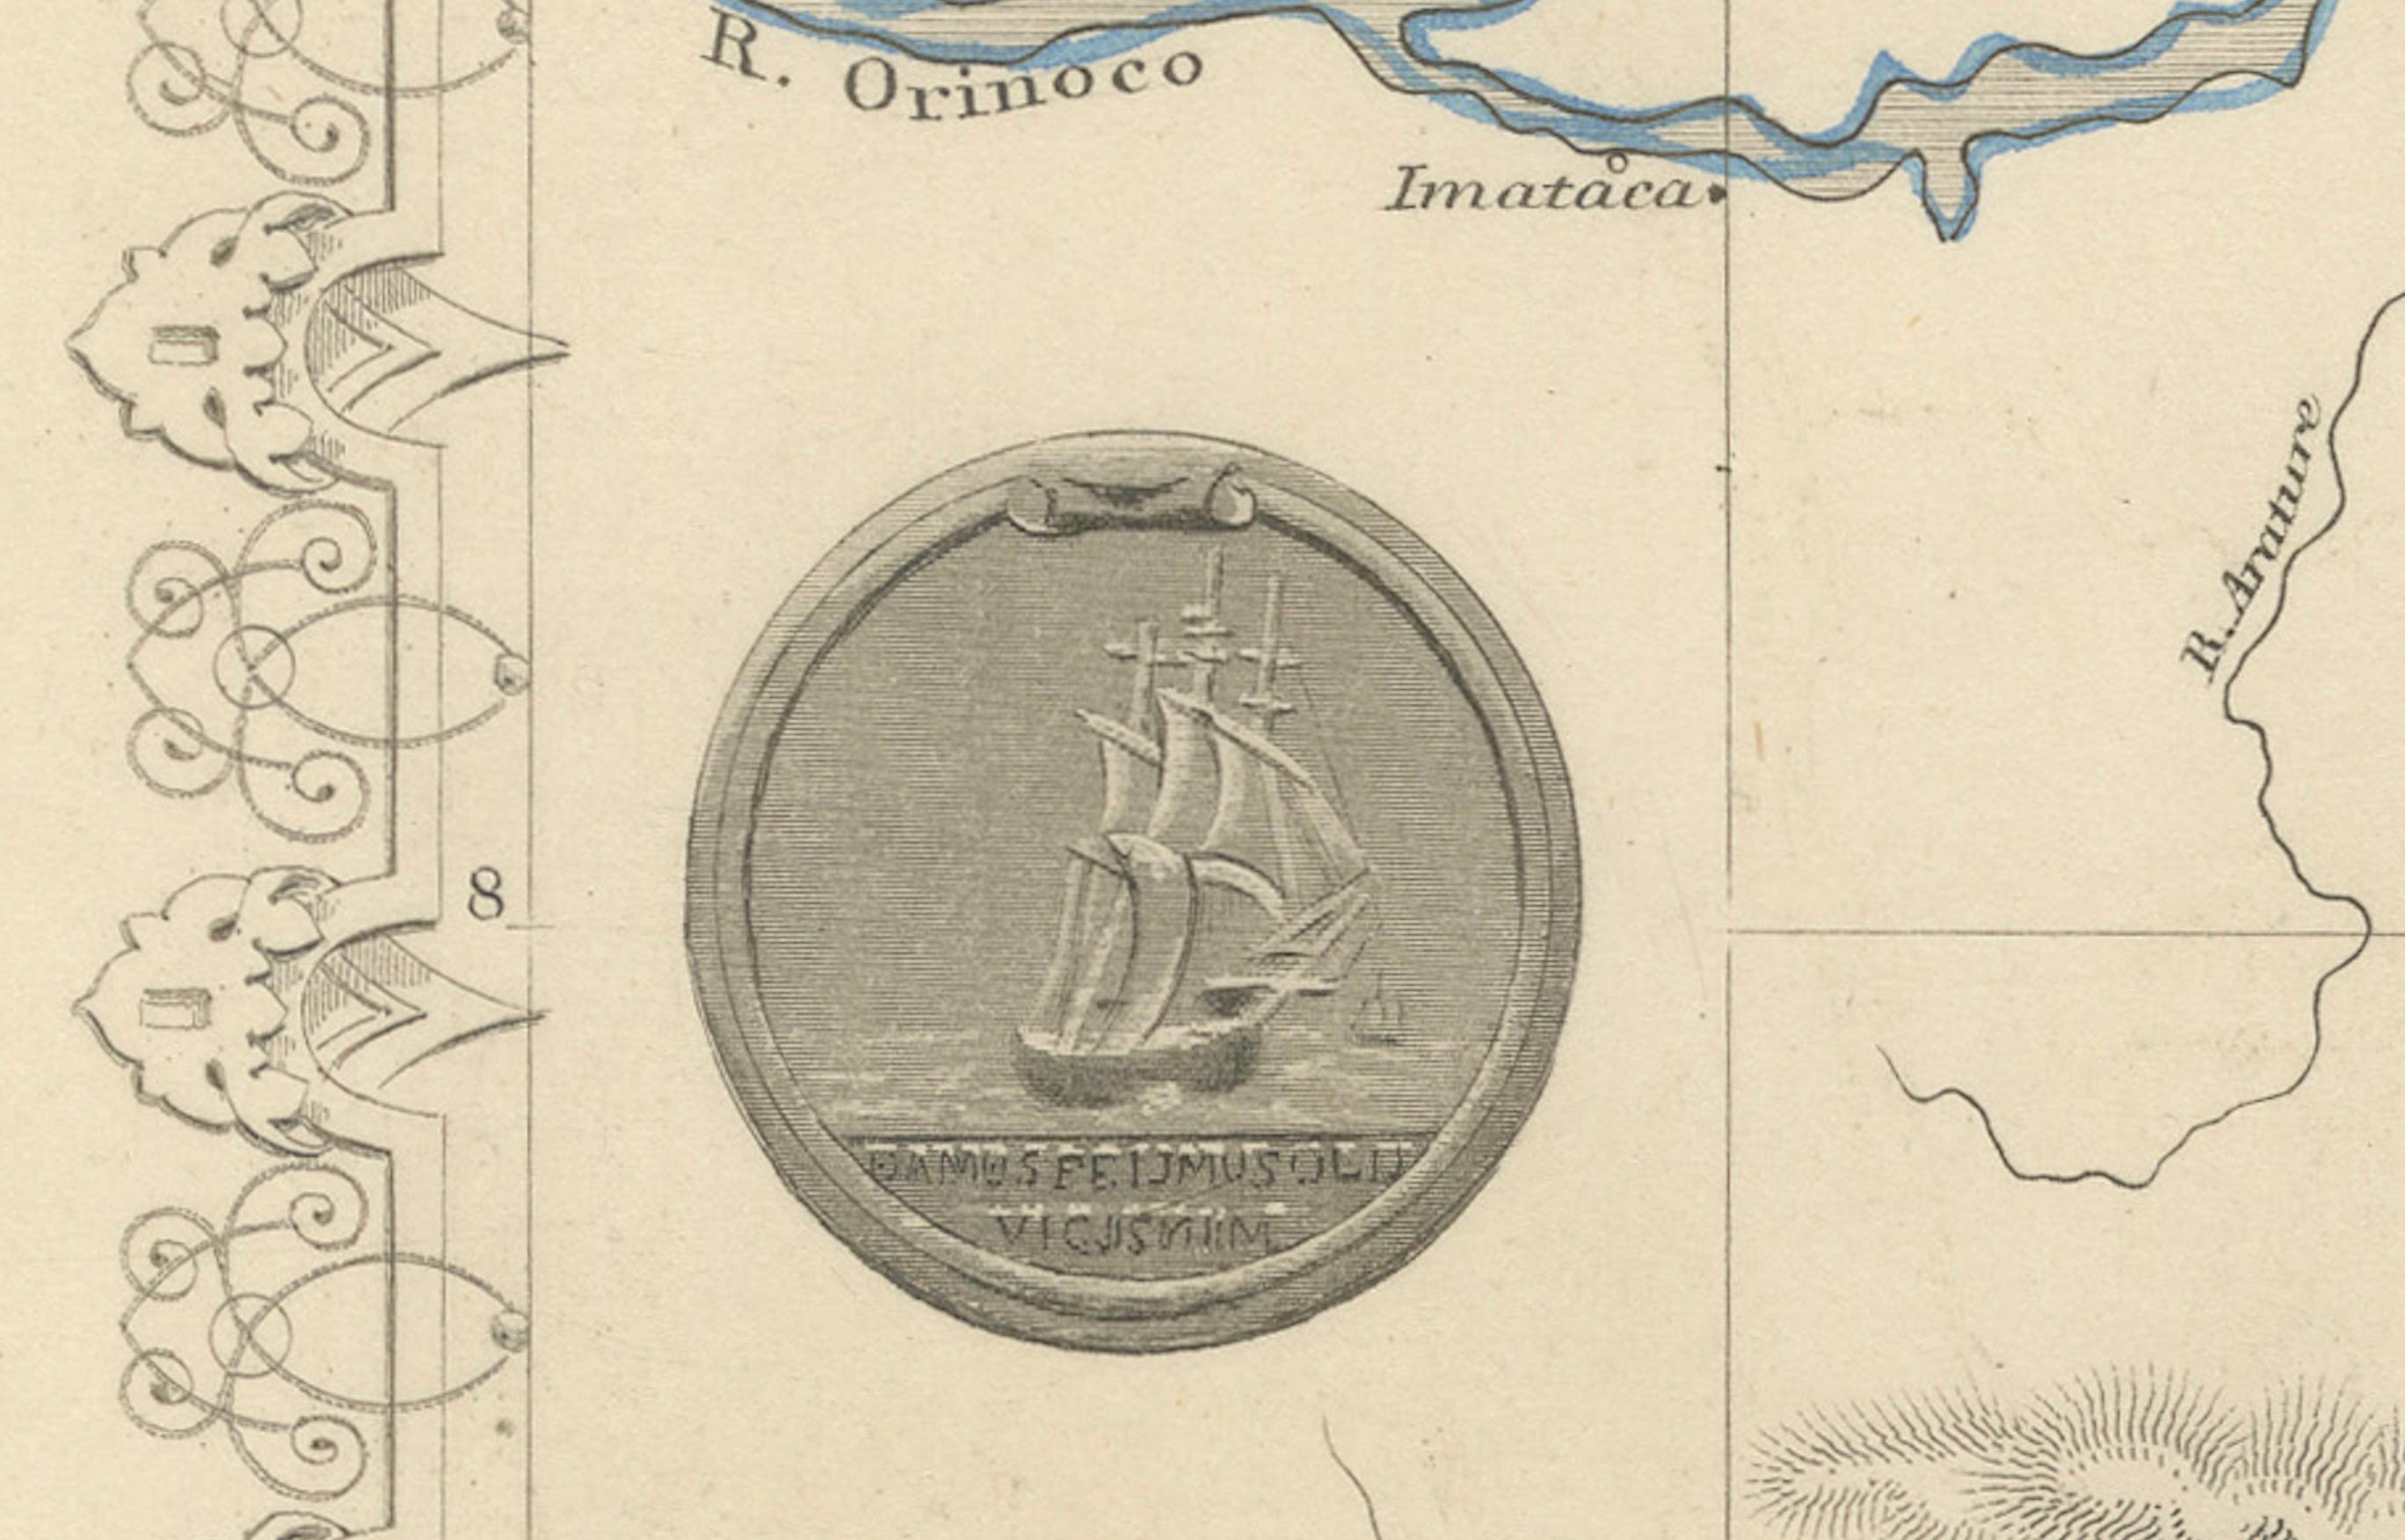 Diese Tallis-Karte von Britisch-Guayana (heute bekannt als Guyana) ist ein reich verziertes Dokument, ähnlich wie andere Karten des angesehenen kartografischen Verlags John Tallis & Company. Das Unternehmen, das vor allem in der viktorianischen Ära